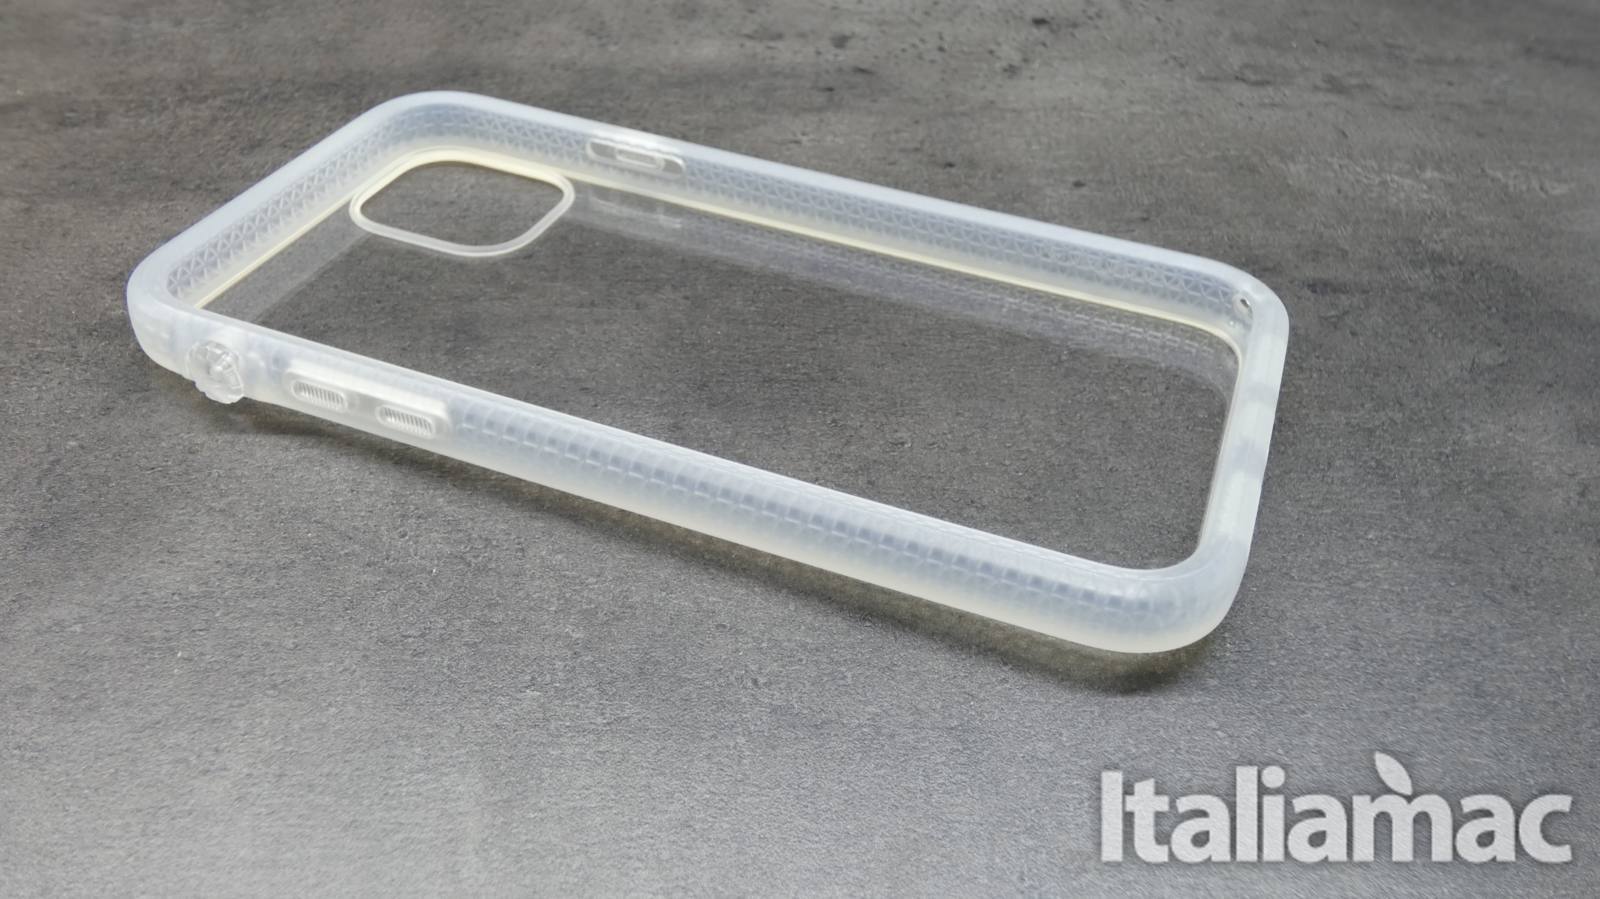 Catalyst Impact Protection Case per iPhone 11 resiste alle cadute da 3 metri 4